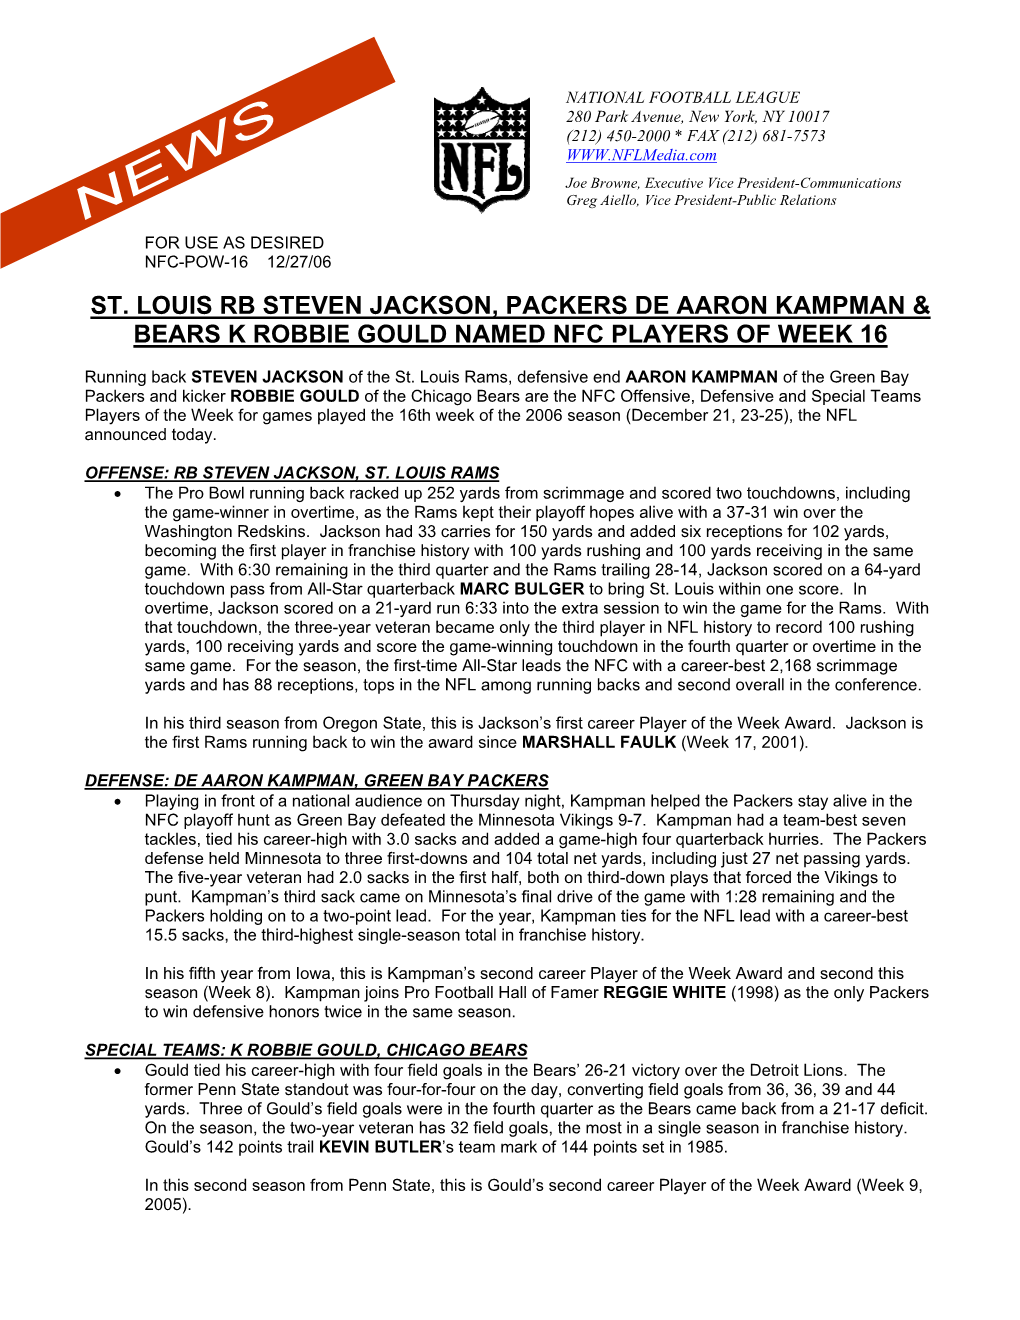 St. Louis Rb Steven Jackson, Packers De Aaron Kampman & Bears K Robbie Gould Named Nfc Players of Week 16